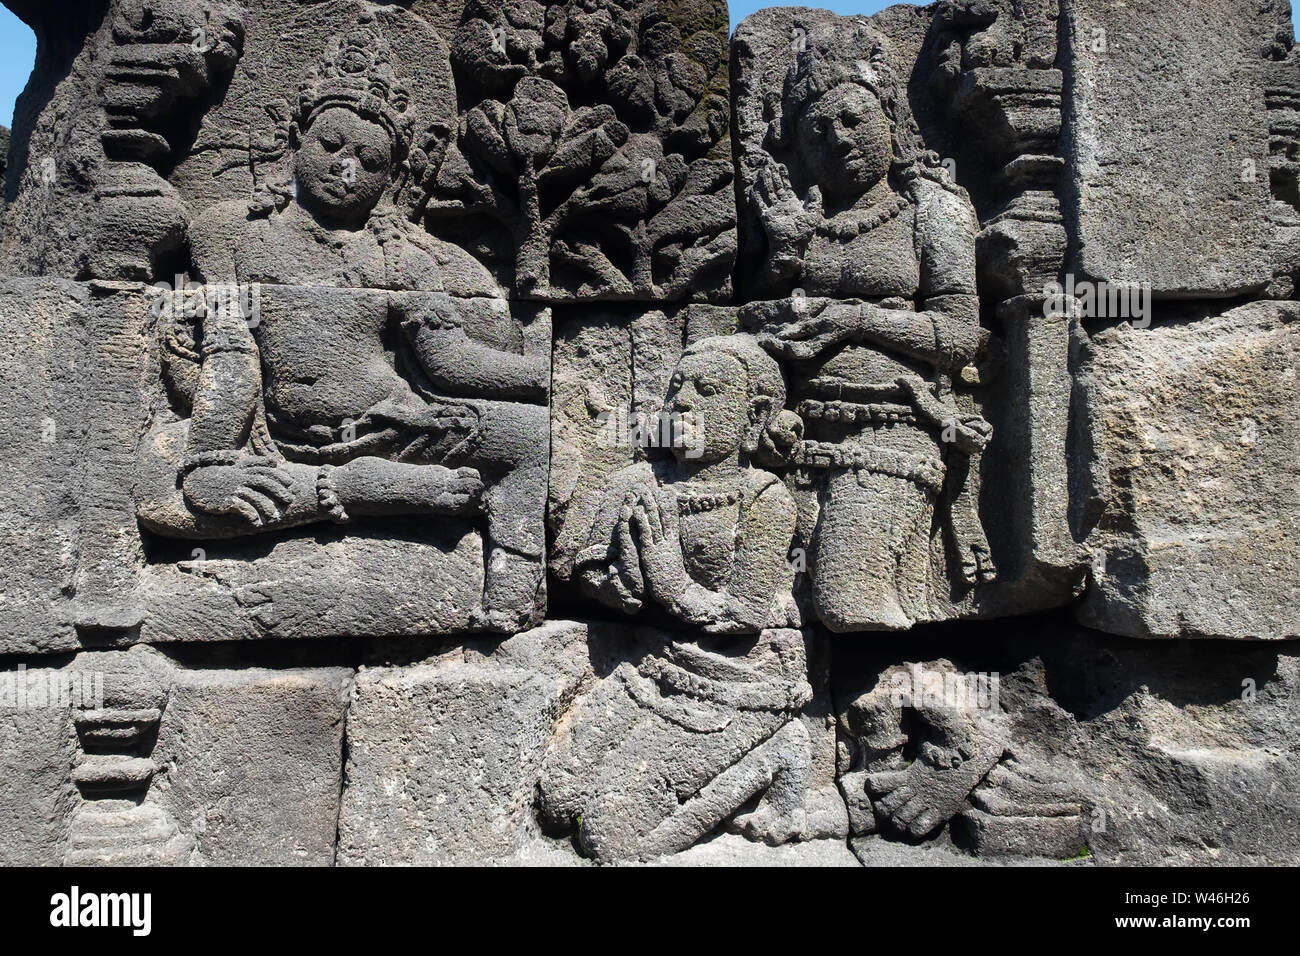 Mur libre ornés de bas-reliefs de la religion. La sculpture sur pierre très détaillées. Temple bouddhiste de Borobudur, Magelang, Indonésie Banque D'Images